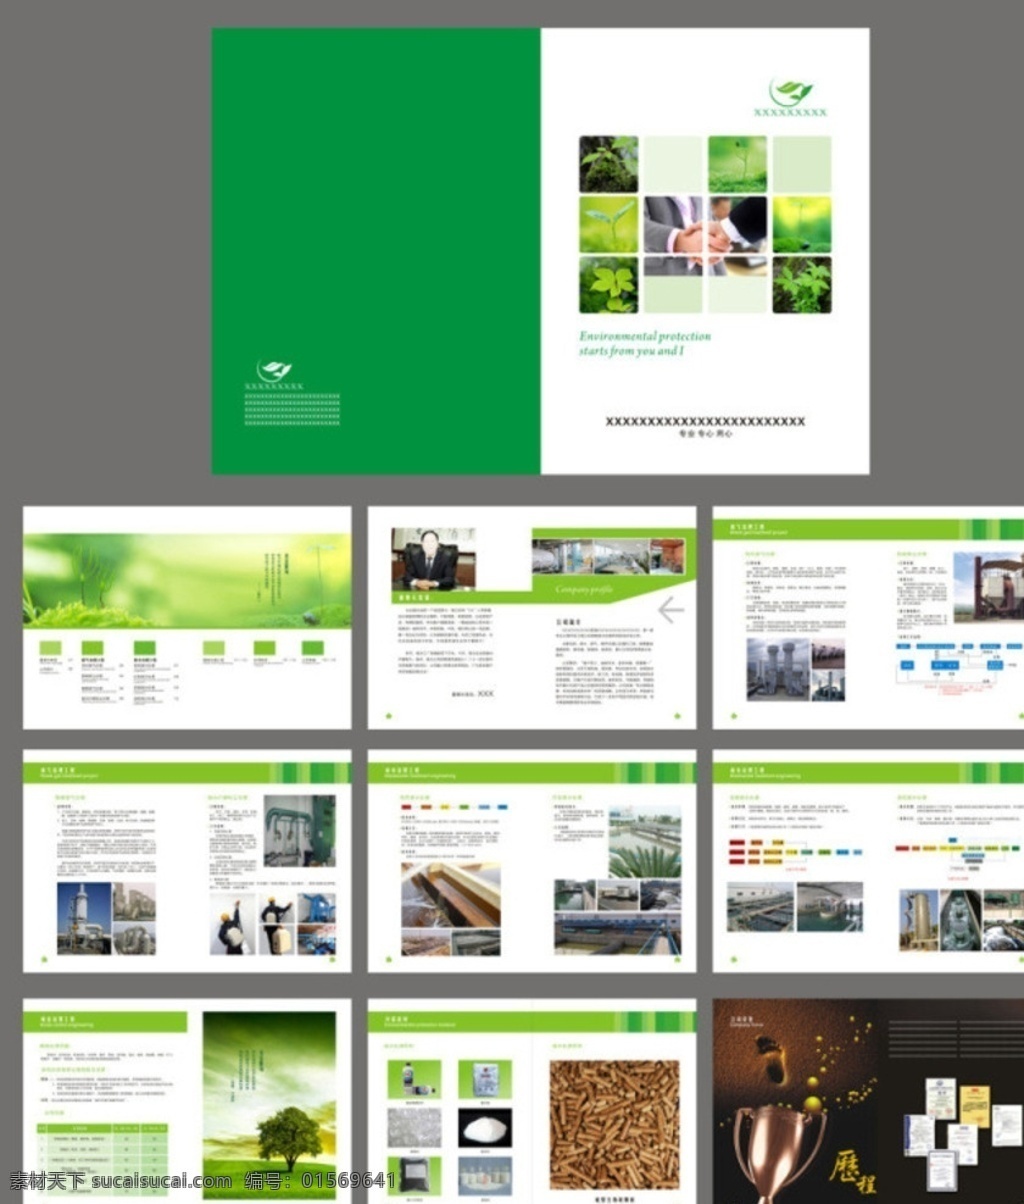 企业 画册 模板下载 公司画册 公司文化 画册模板 画册设计 绿色画册